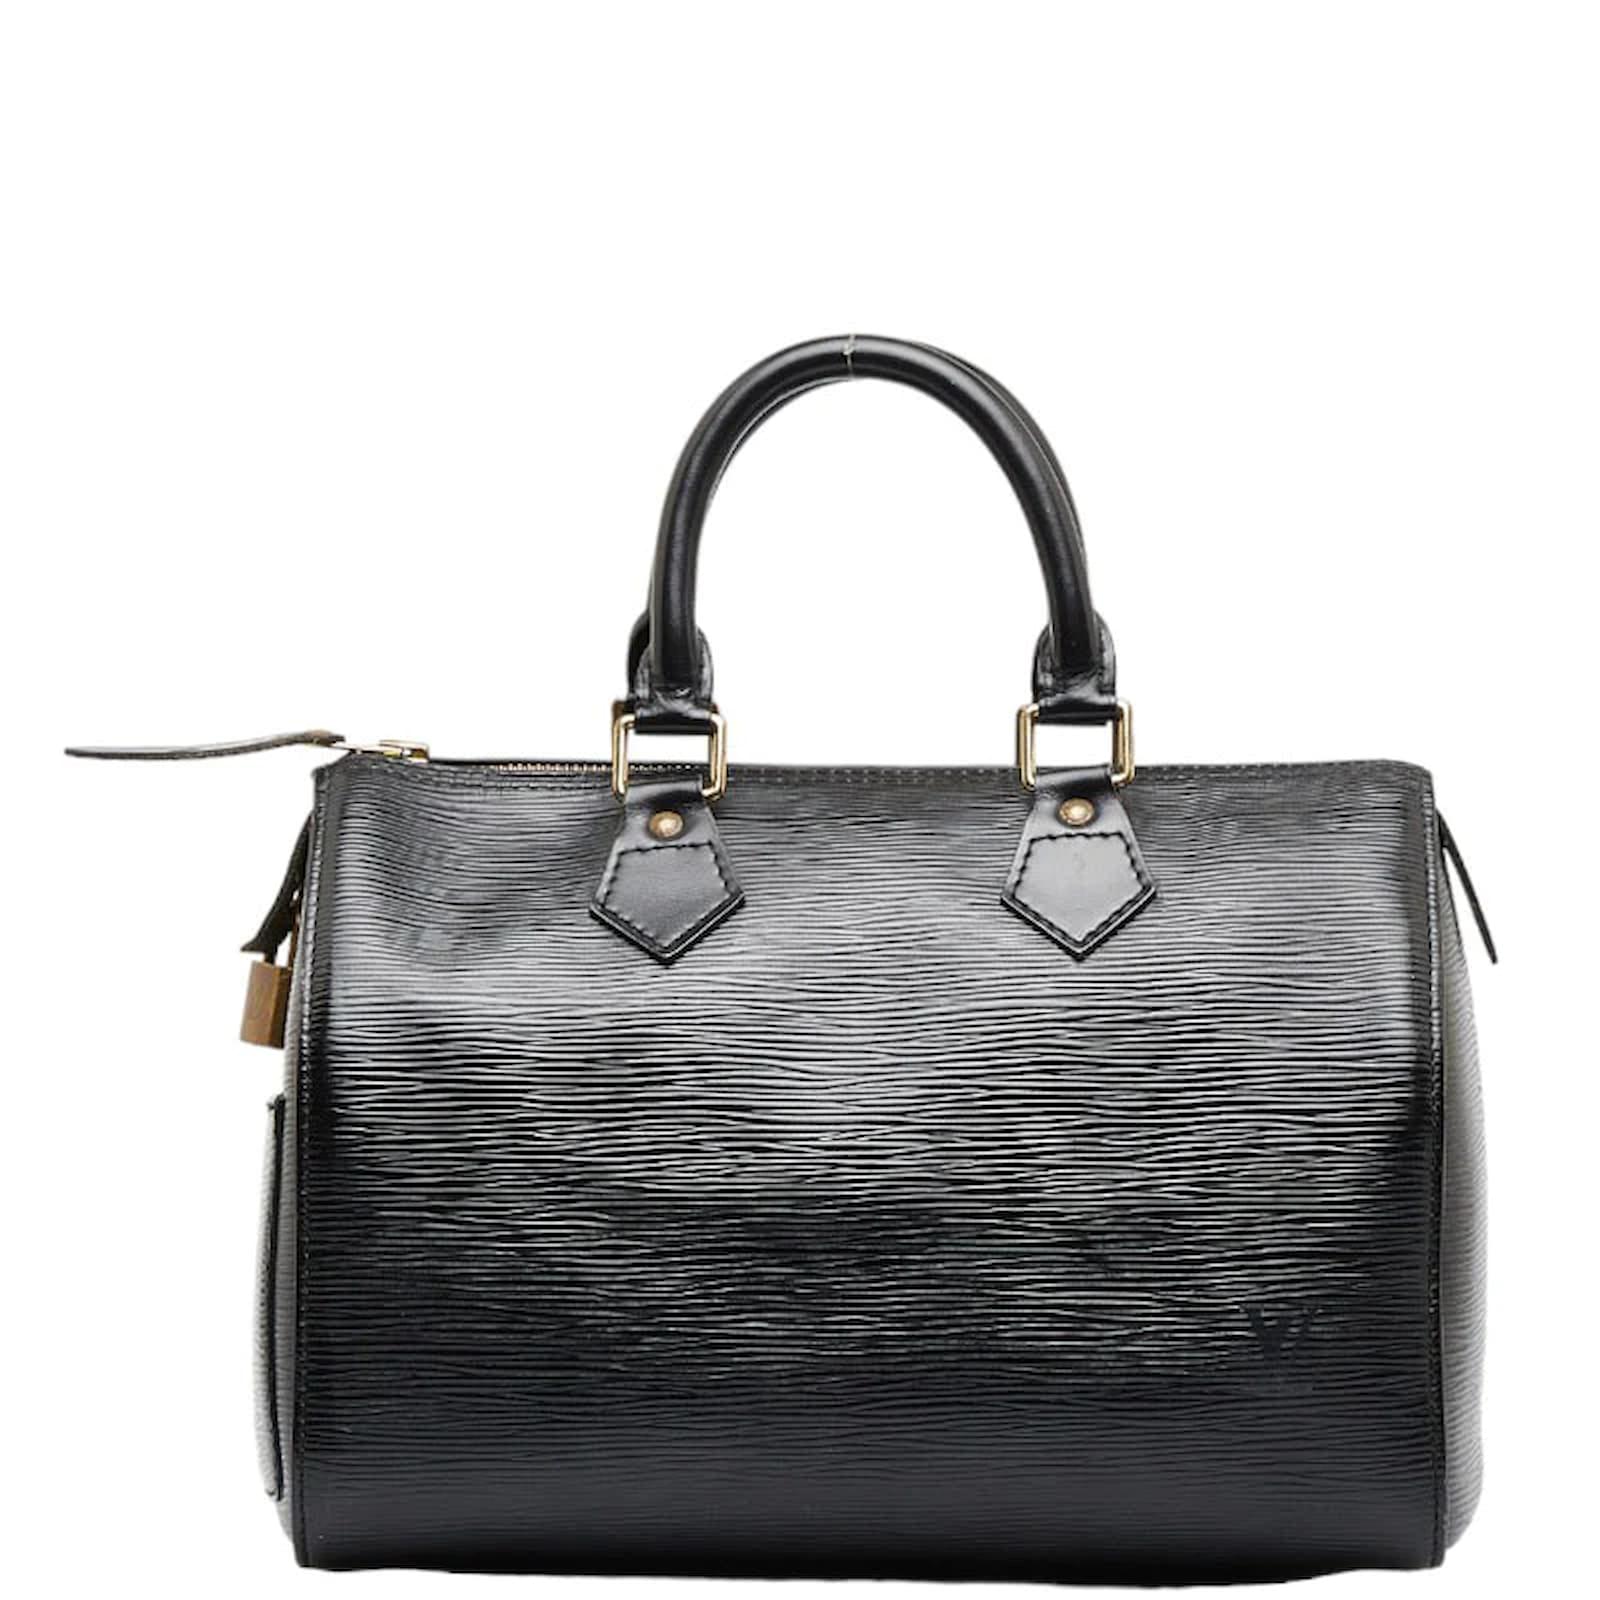 Louis Vuitton Epi Speedy Bag 25 M59032 Black Leather Pony-style